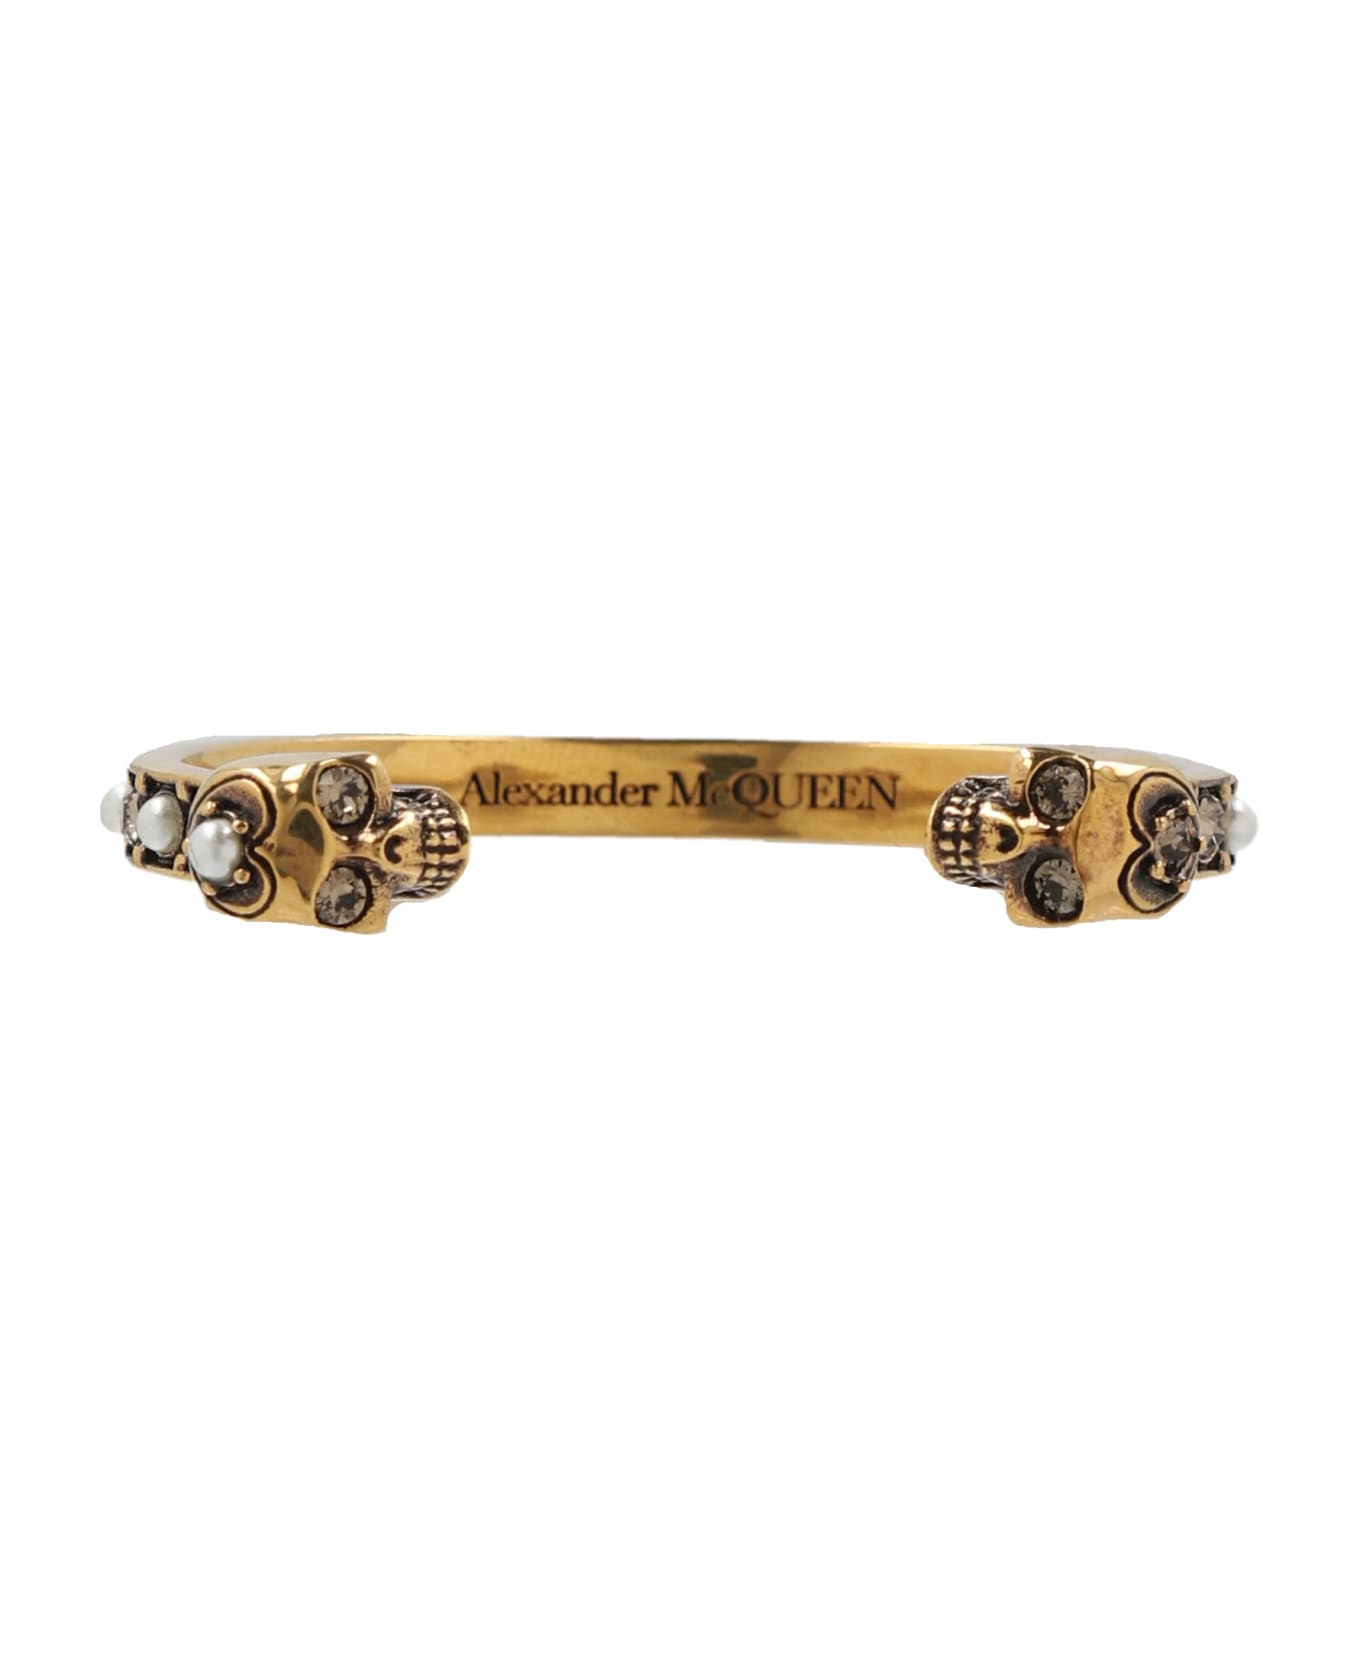 Alexander McQueen Metal Bracelet - Gold ブレスレット